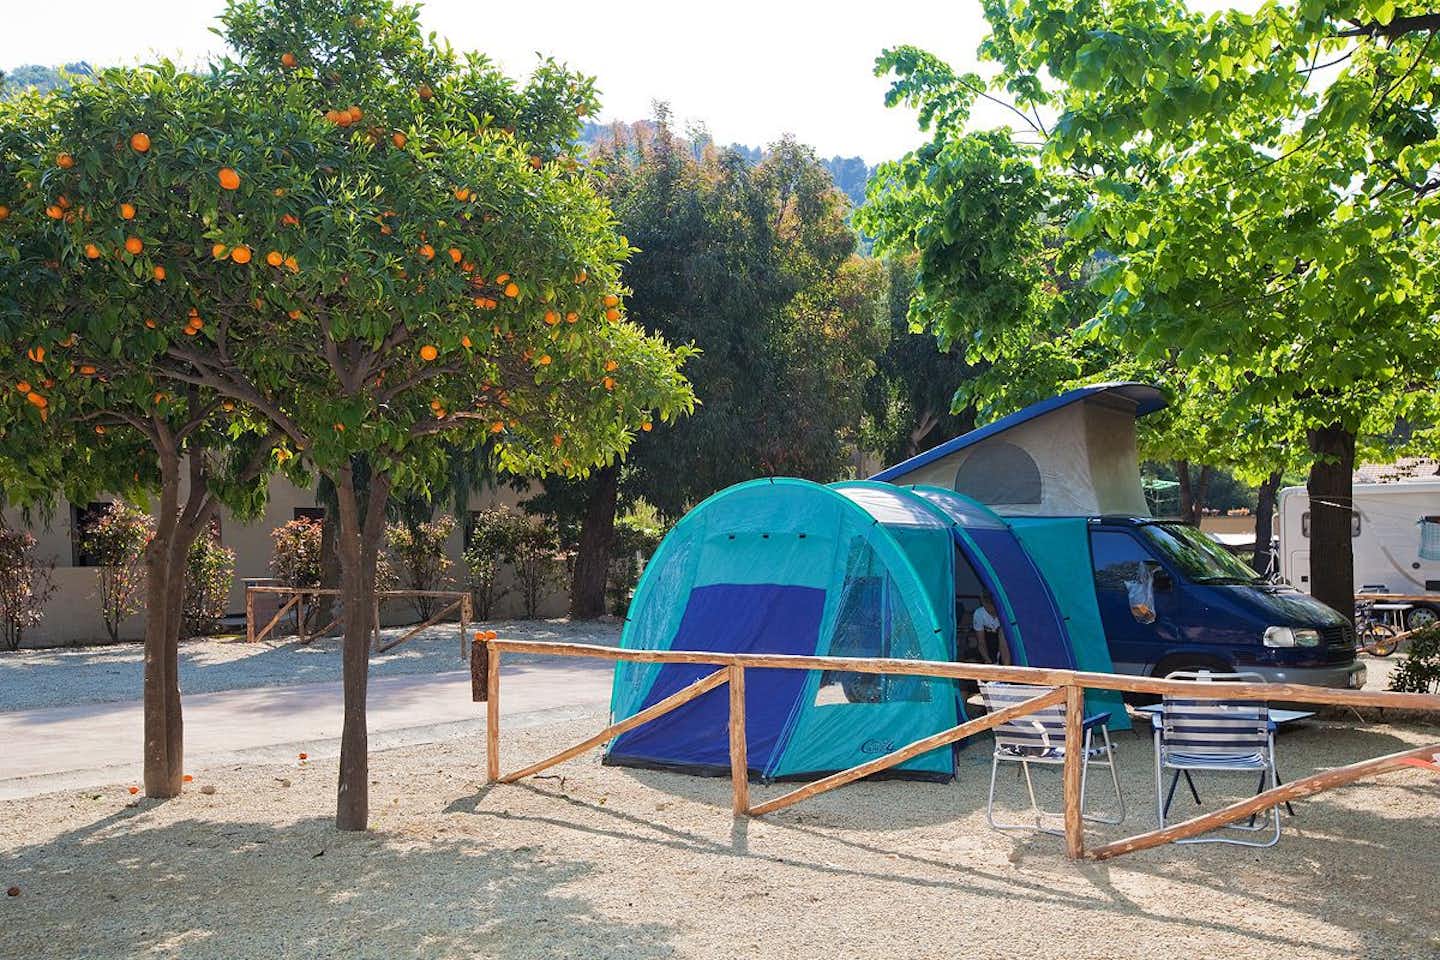 Eurocamping Calvisio  -  Wohnwagen- und Zeltstellplatz zwischen Bäumen auf dem Campingplatz